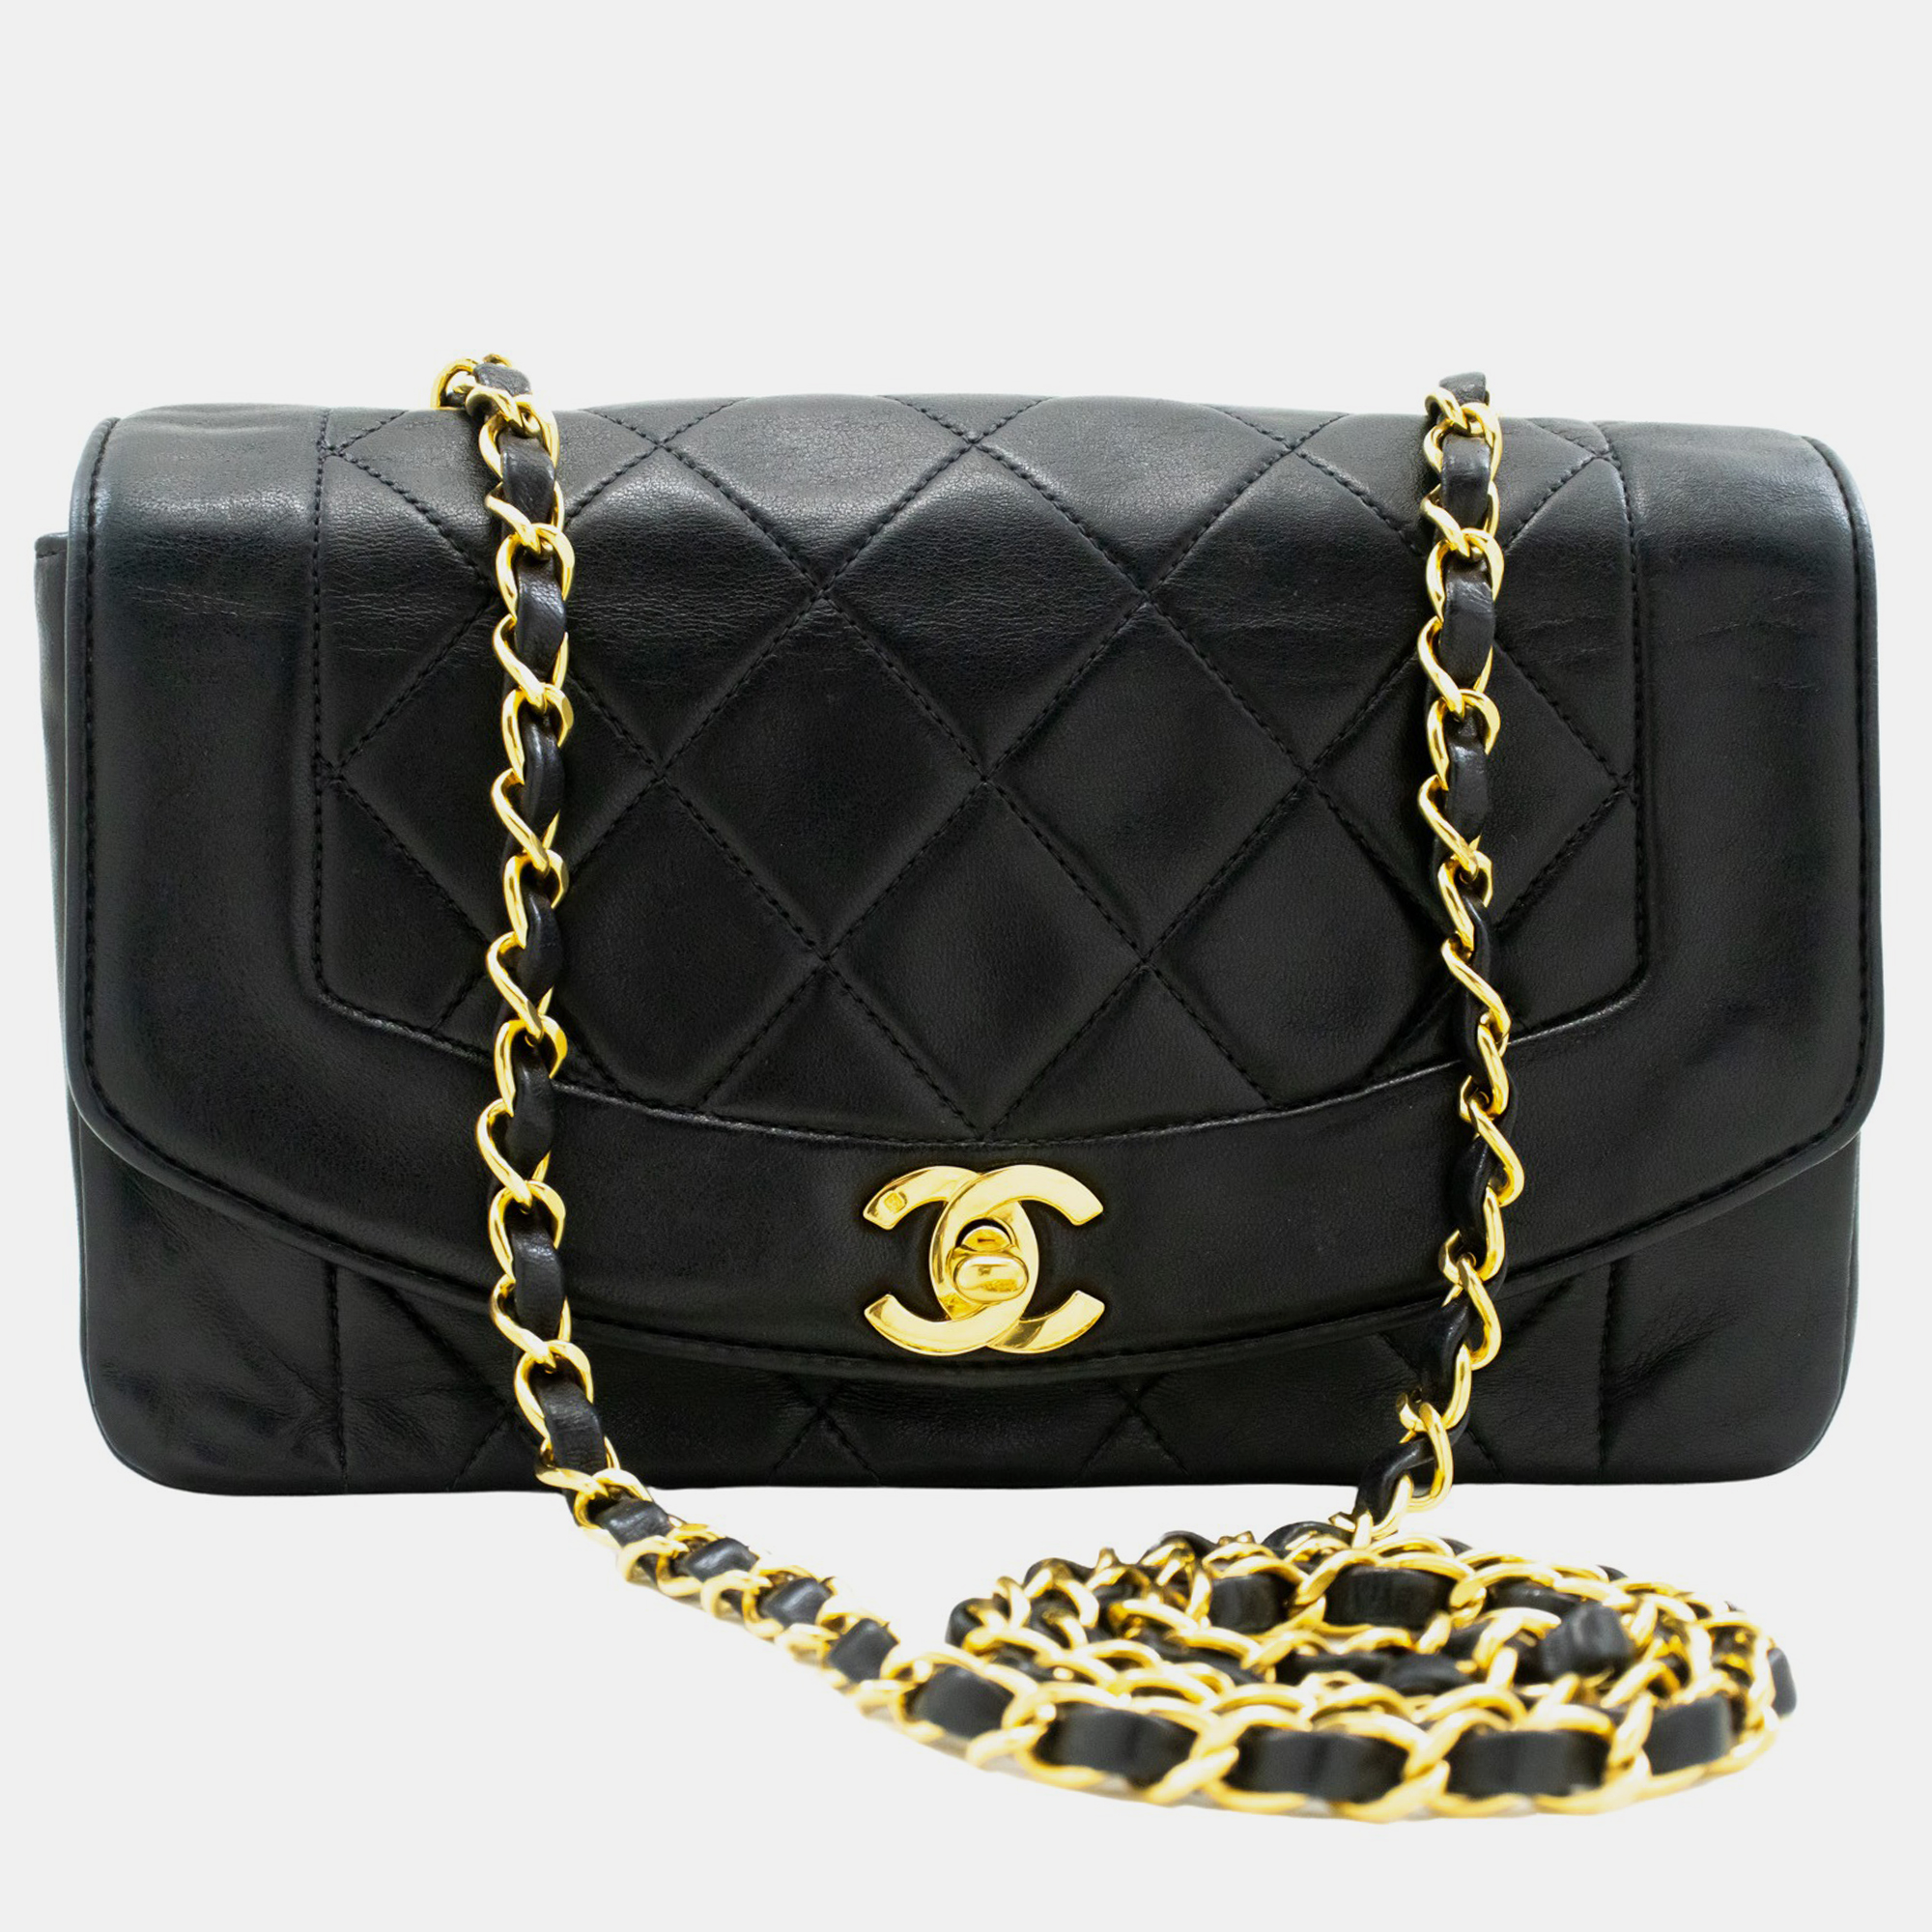 

Chanel Black Leather Vintage Diana Flap Bag